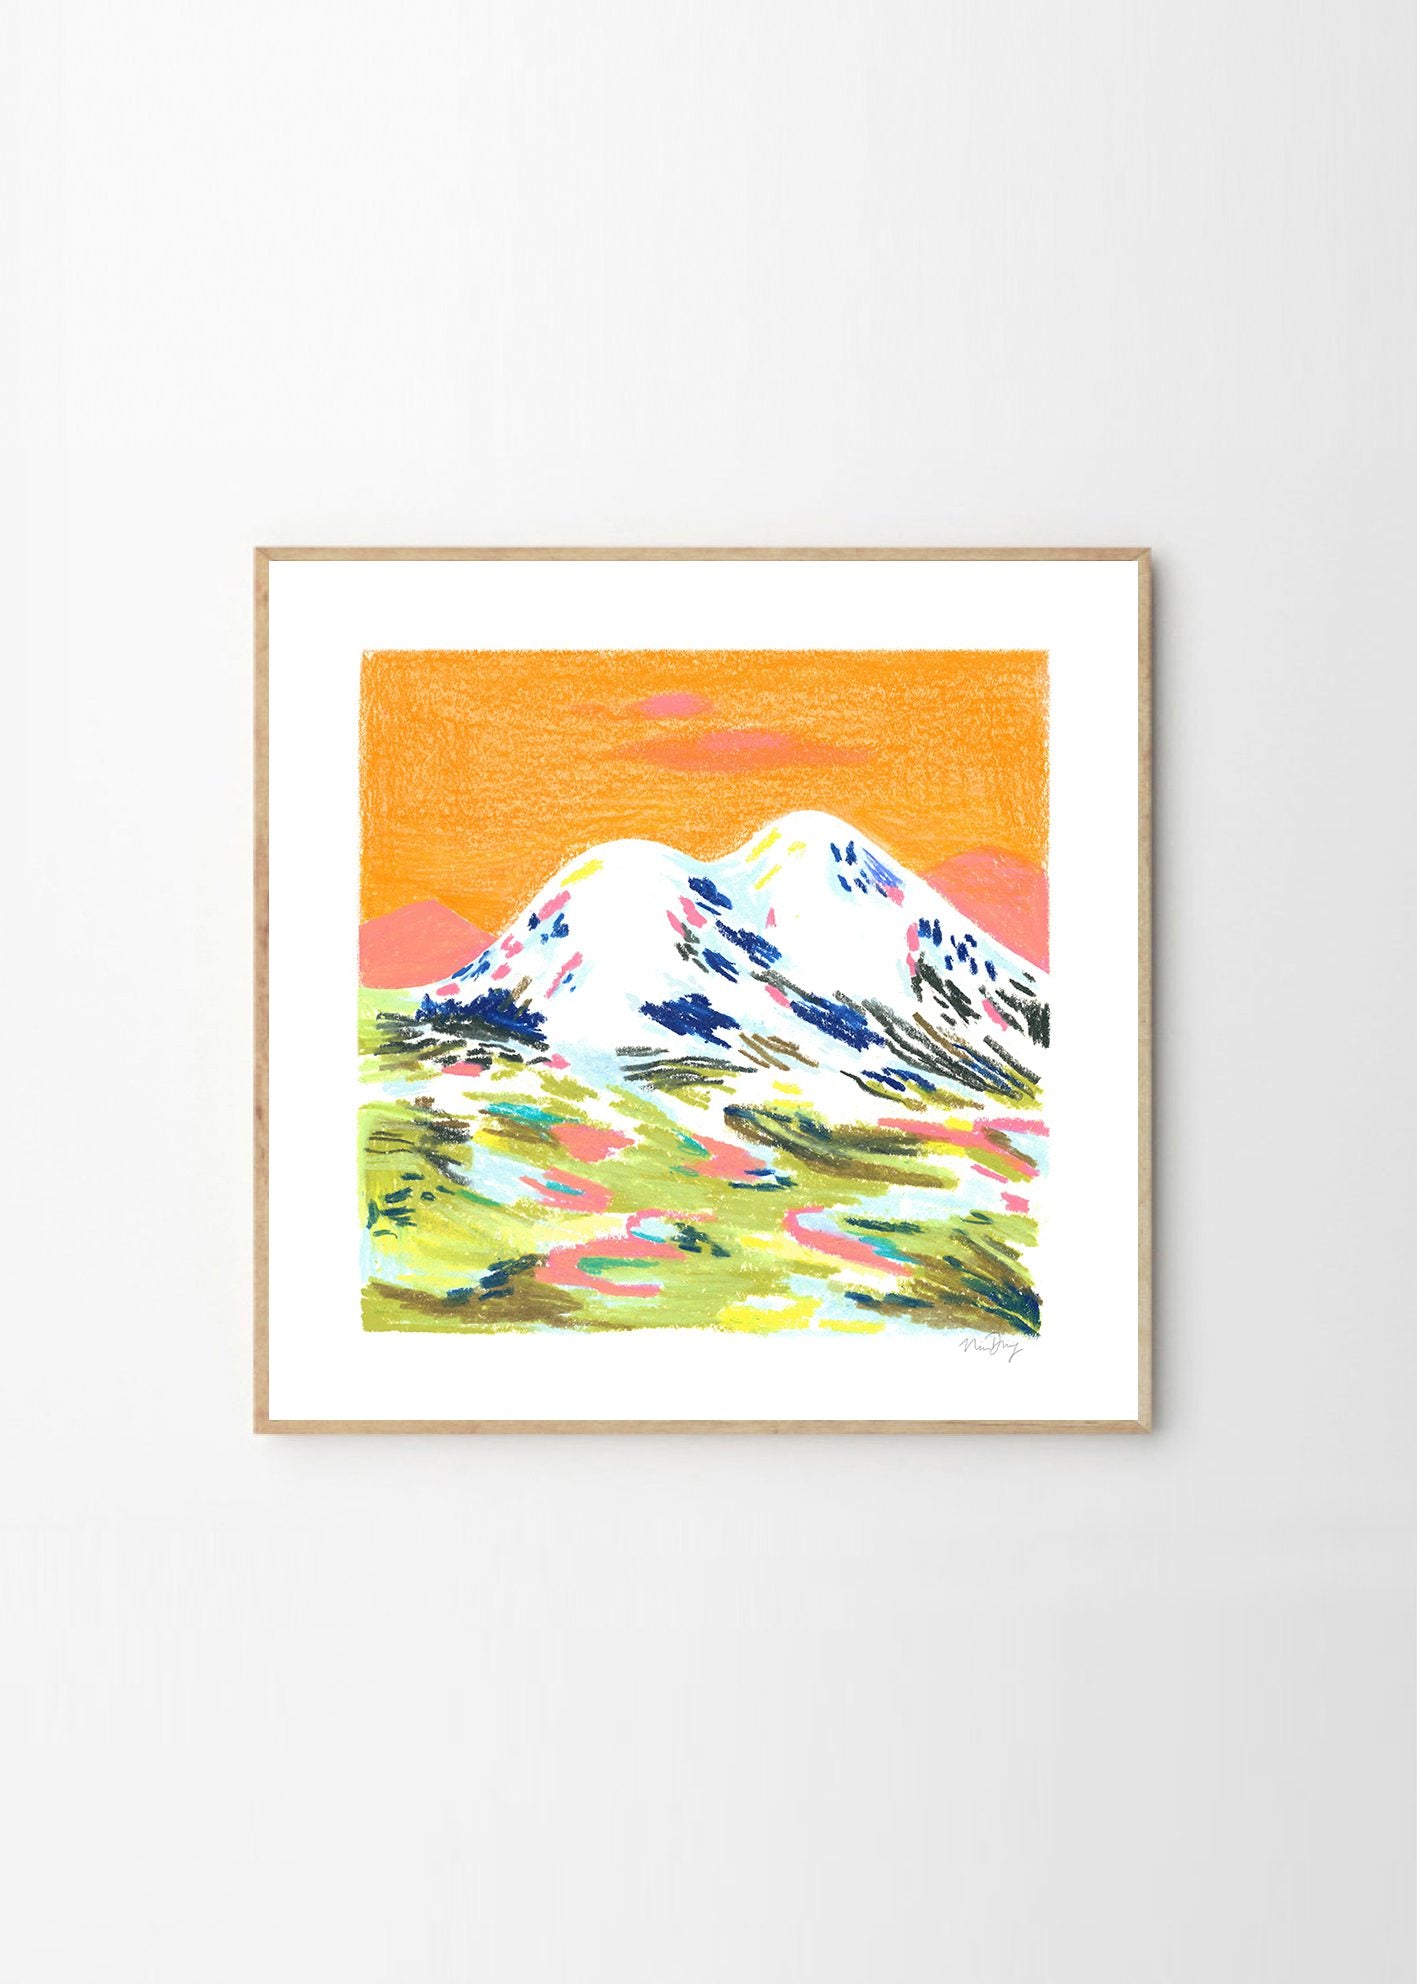 Orange Mountain by Nina Dissing